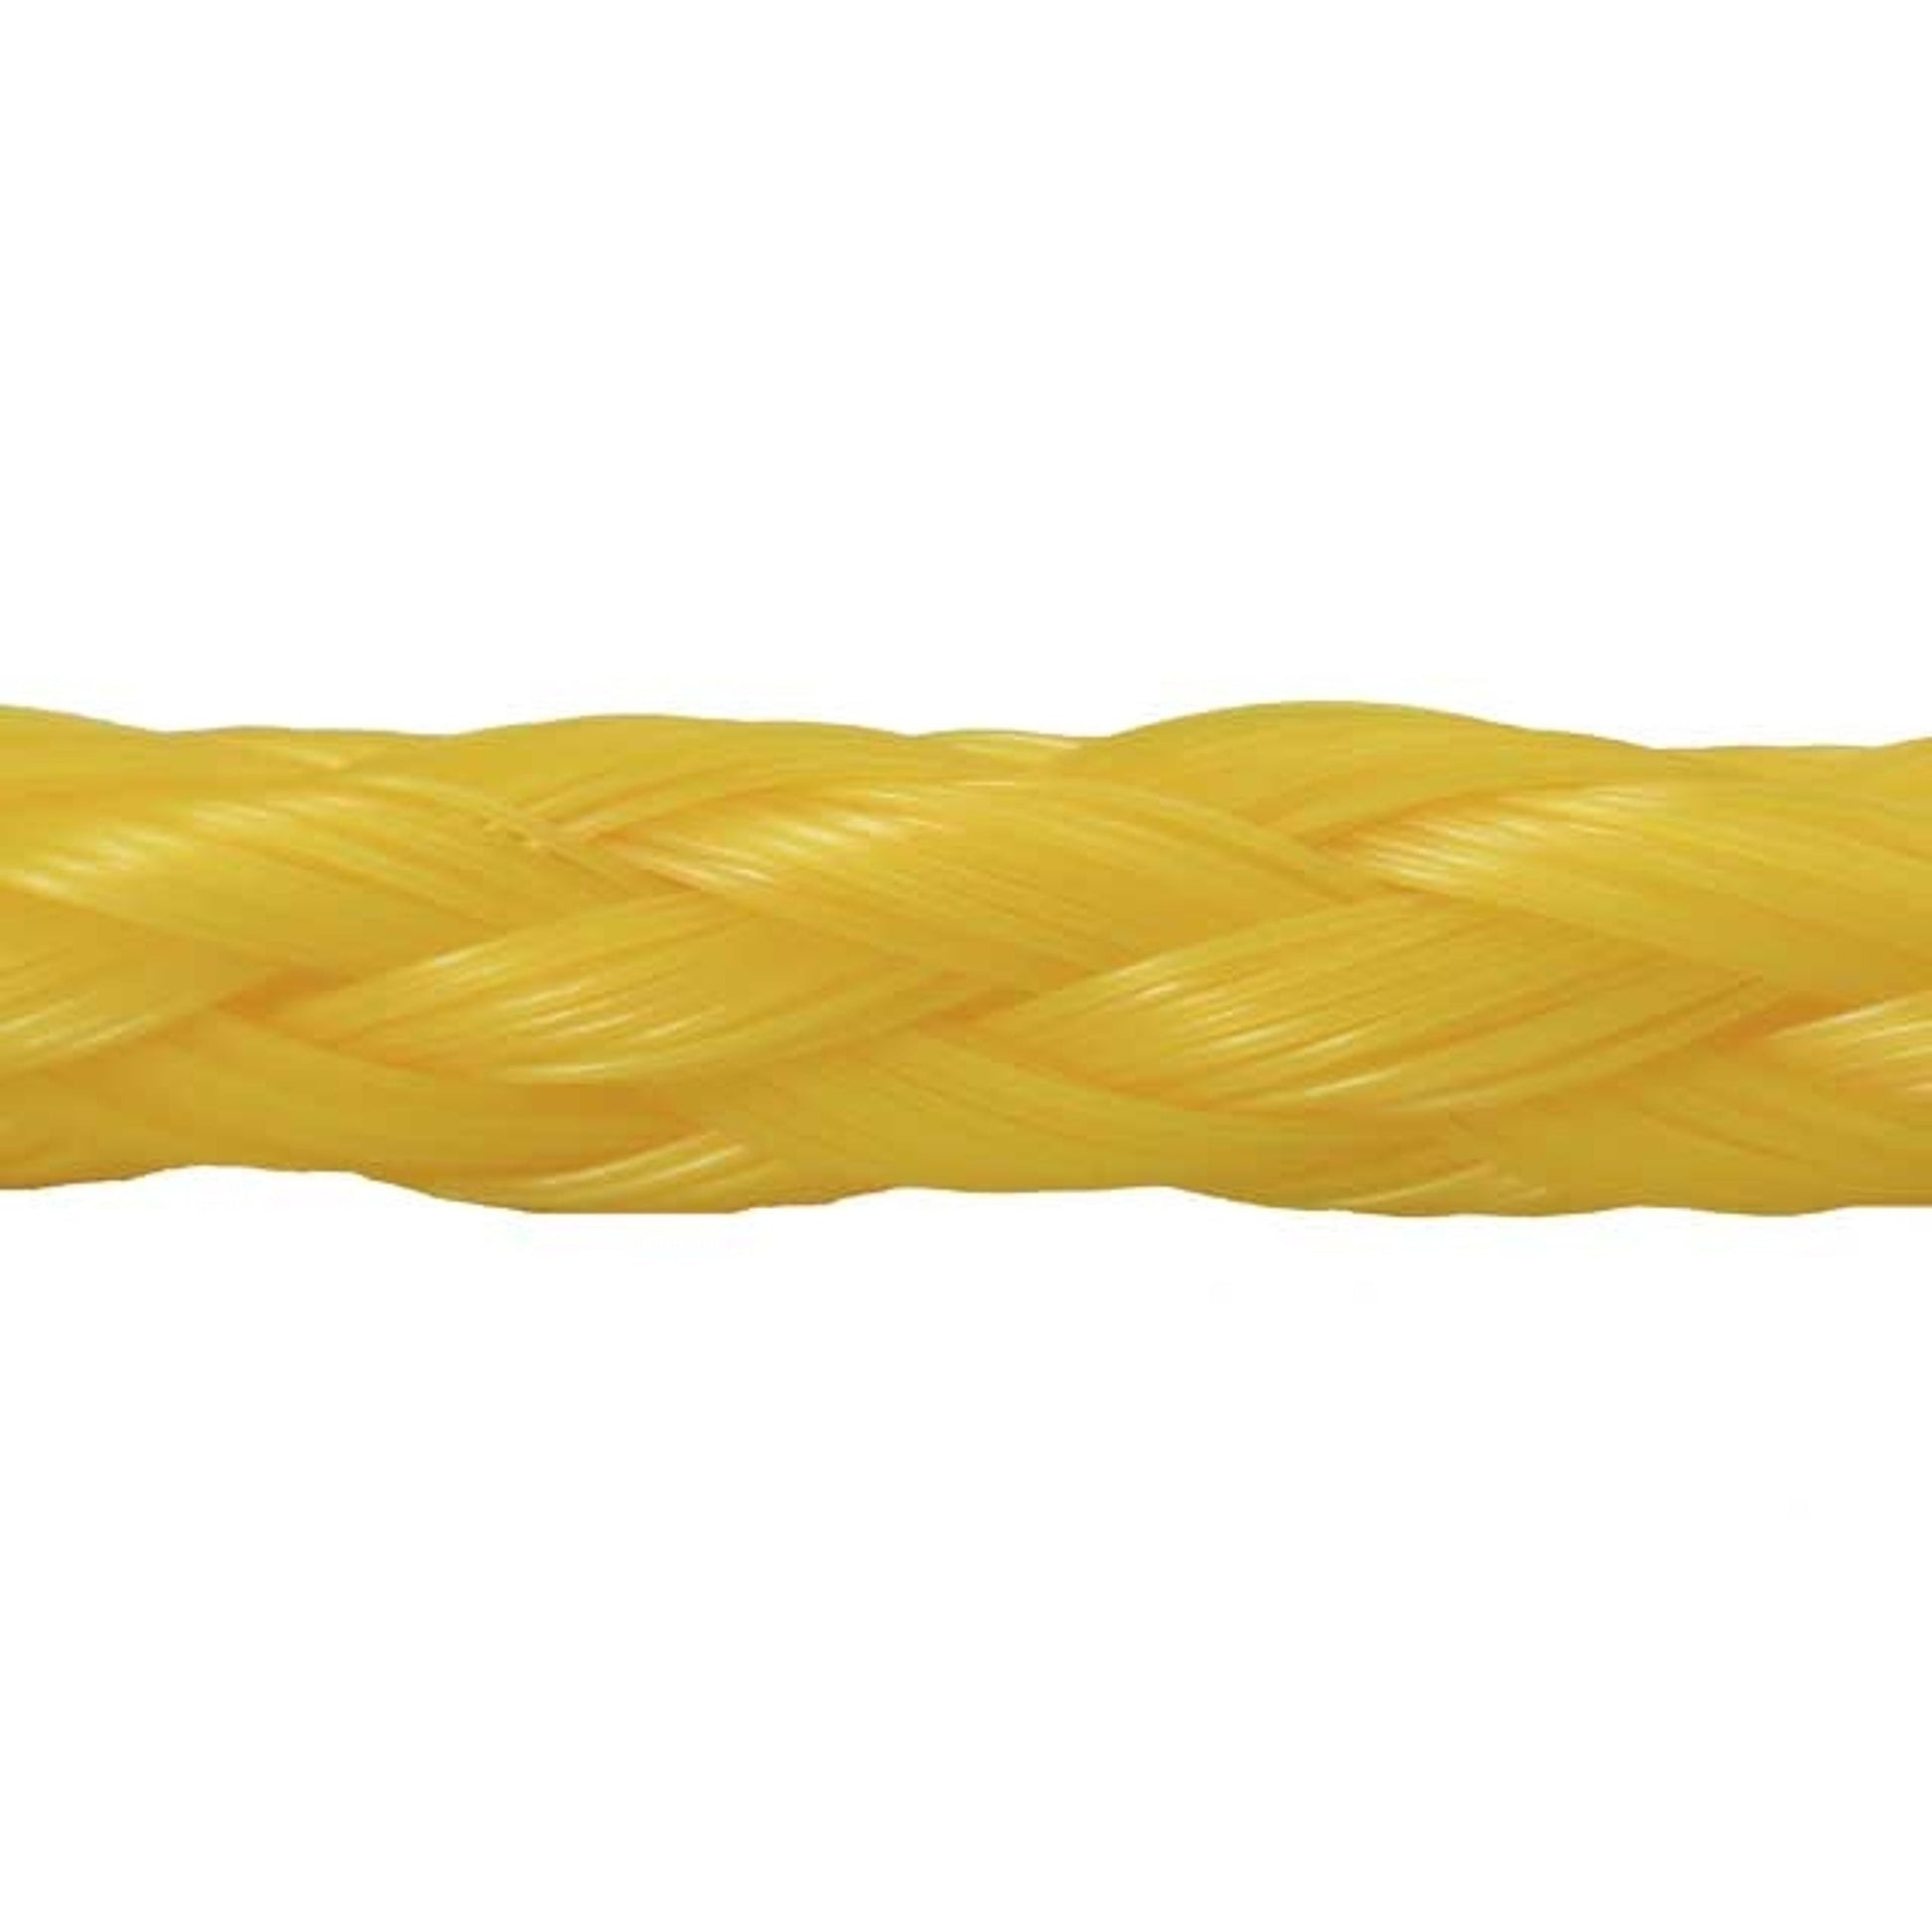 Tow Rope - Nylon - 5,500 lb. Capacity 